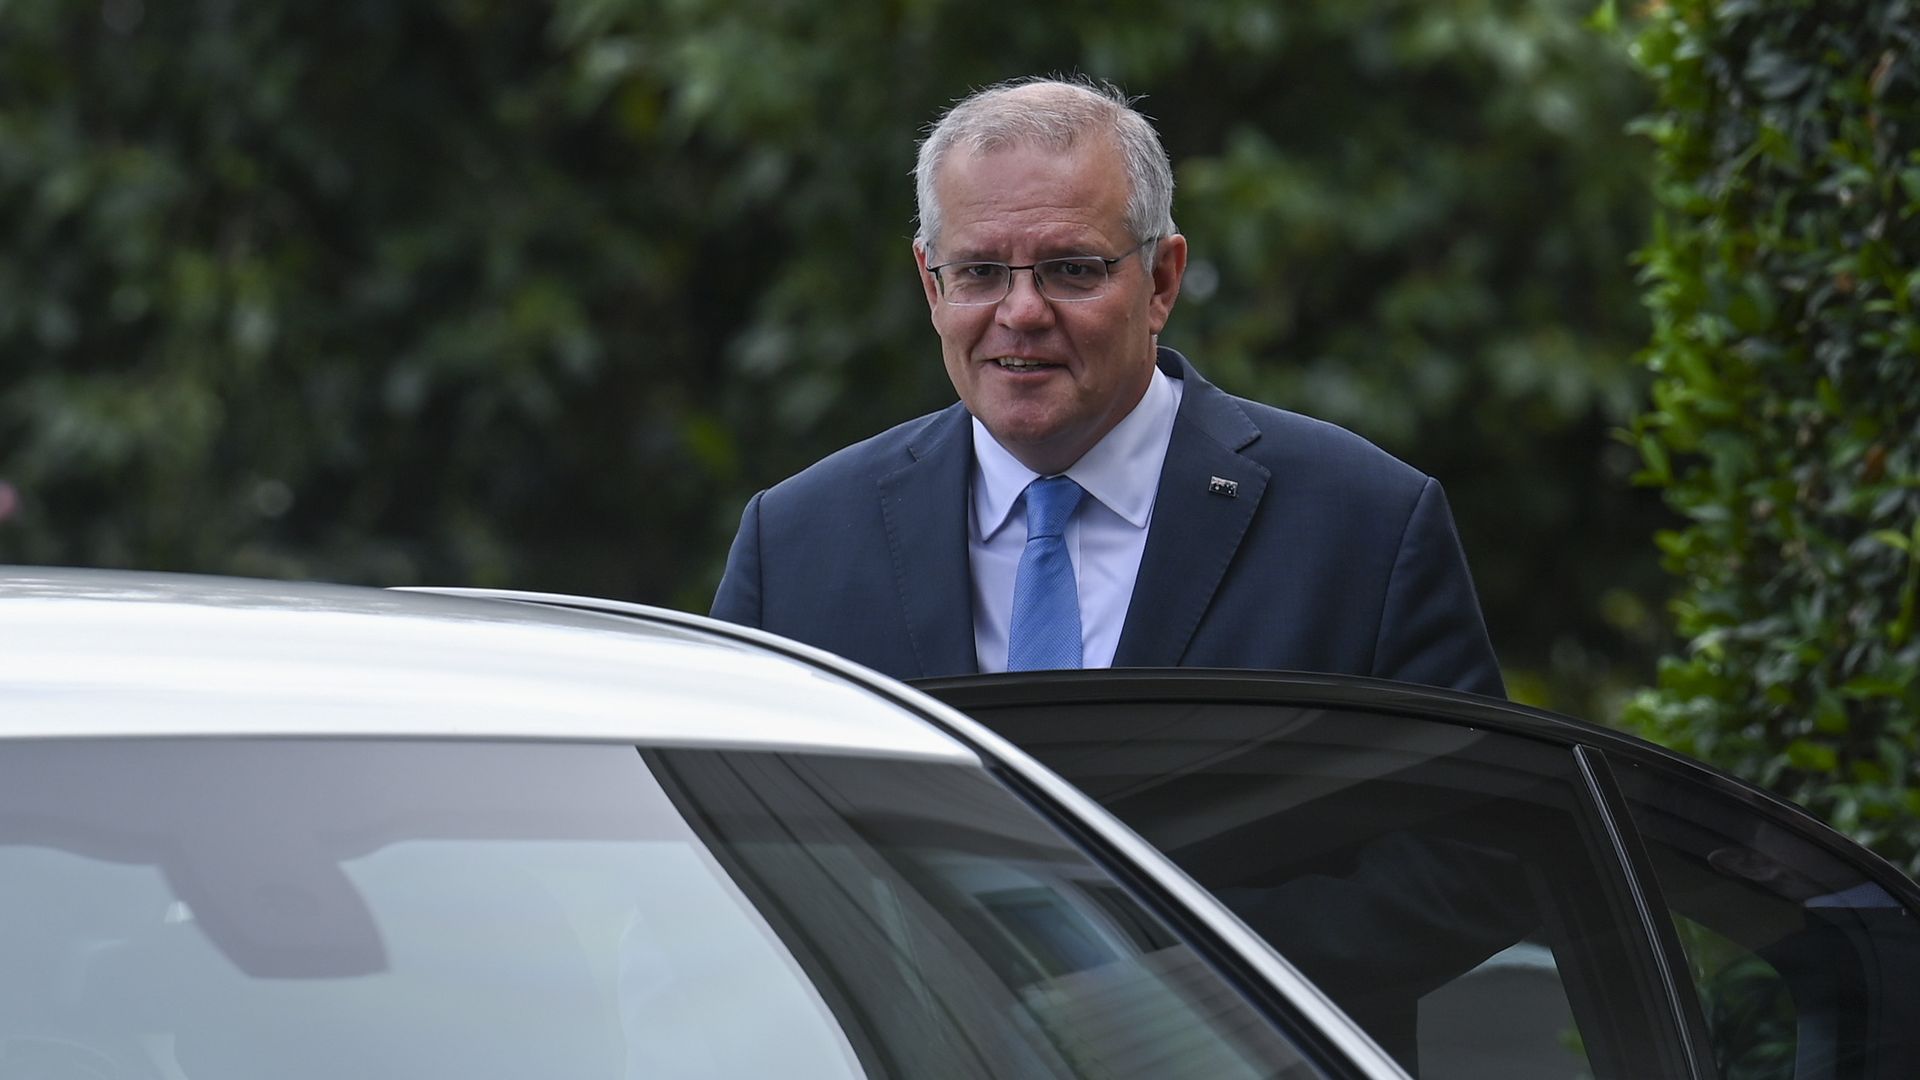 Prime Minister Scott Morrison leaves Government House on April 10, 2022 in Canberra, Australia.